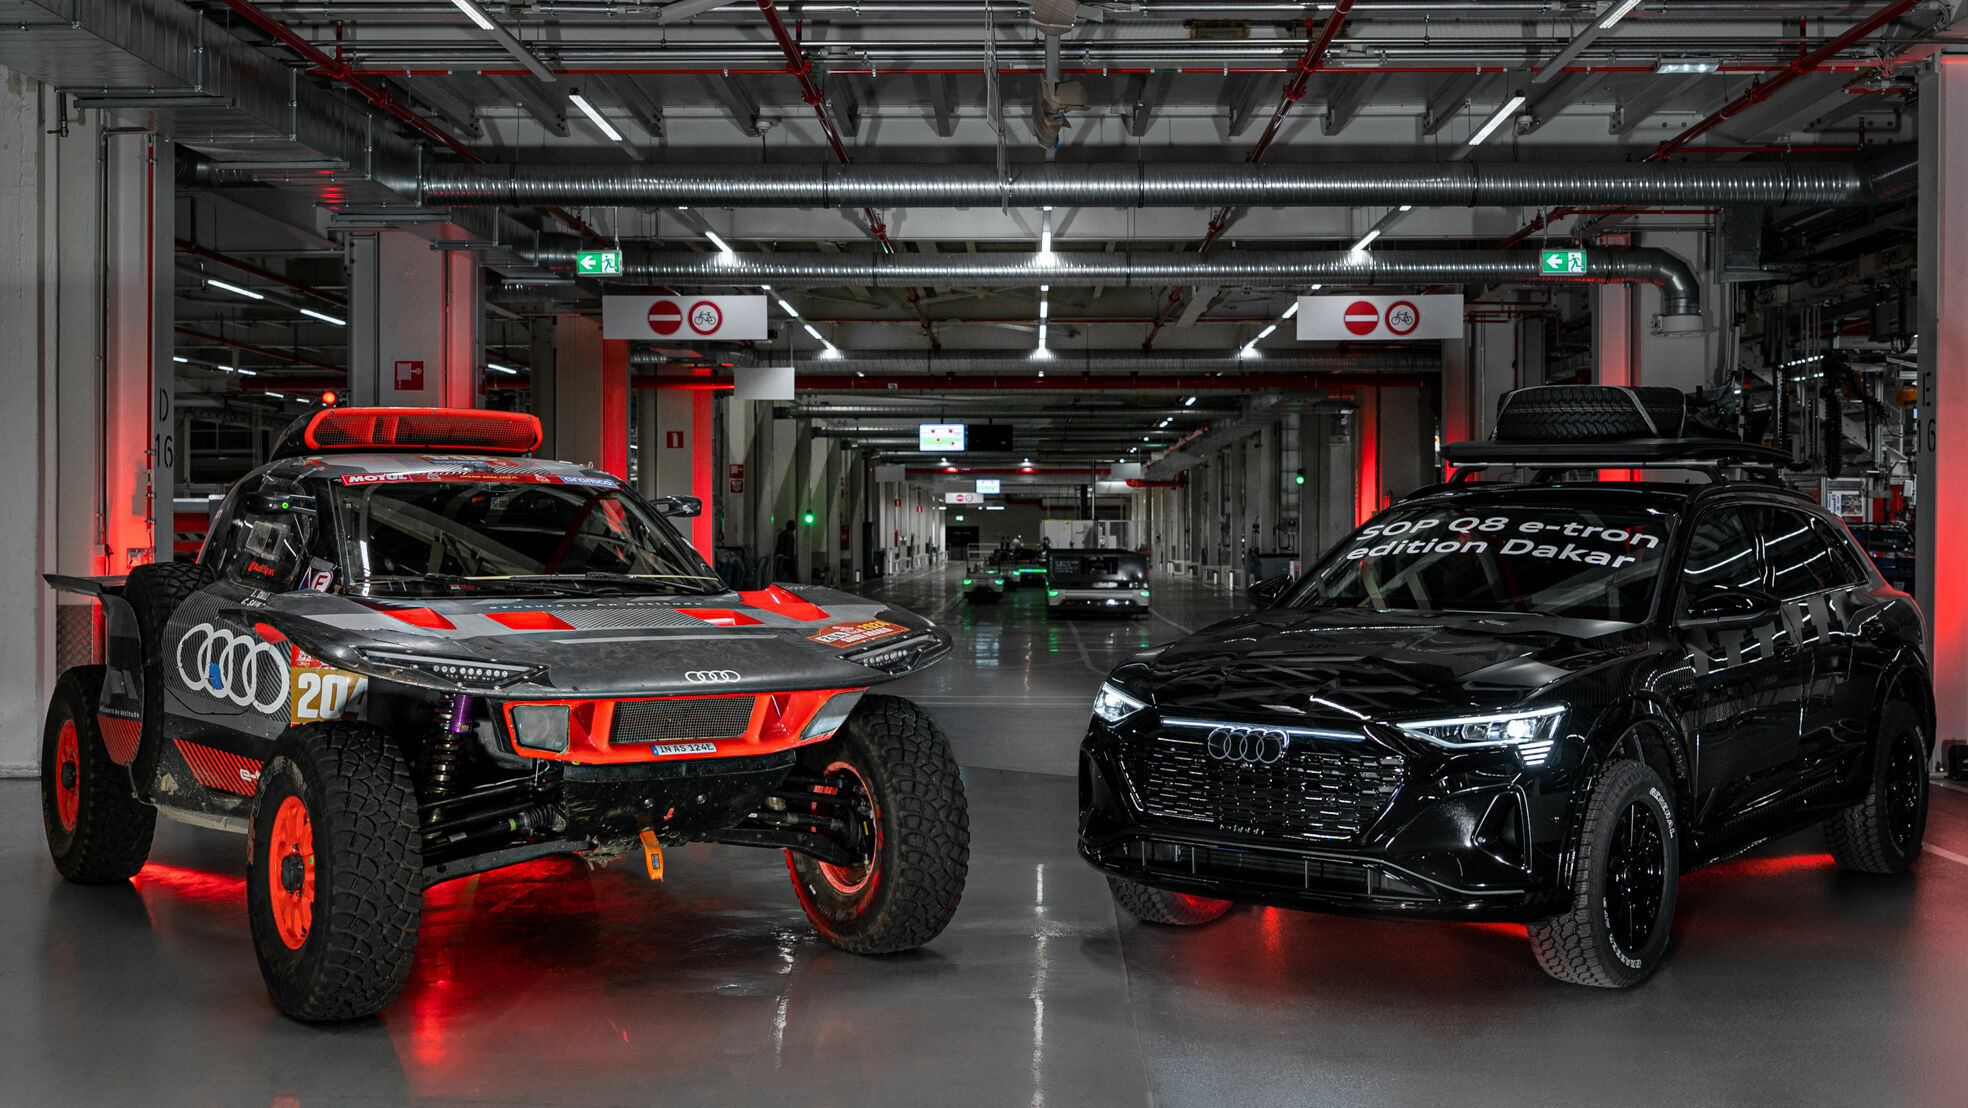 Produktionsstart des Audi Q8 e-tron edition Dakar bei Audi Brussels